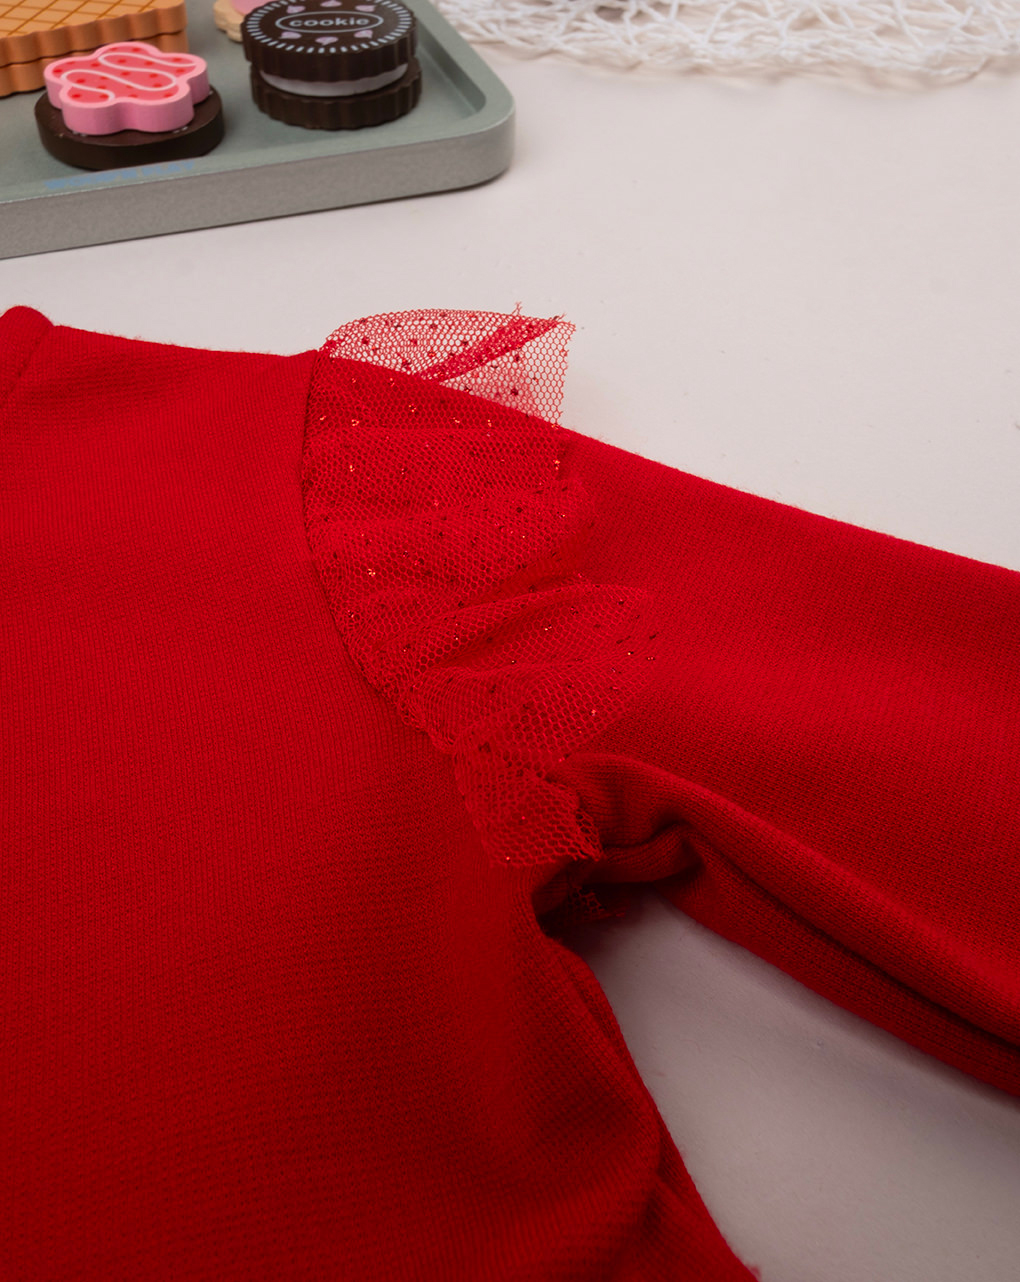 βρεφικό φόρεμα κόκκινο με τούλι για κορίτσι - Prénatal